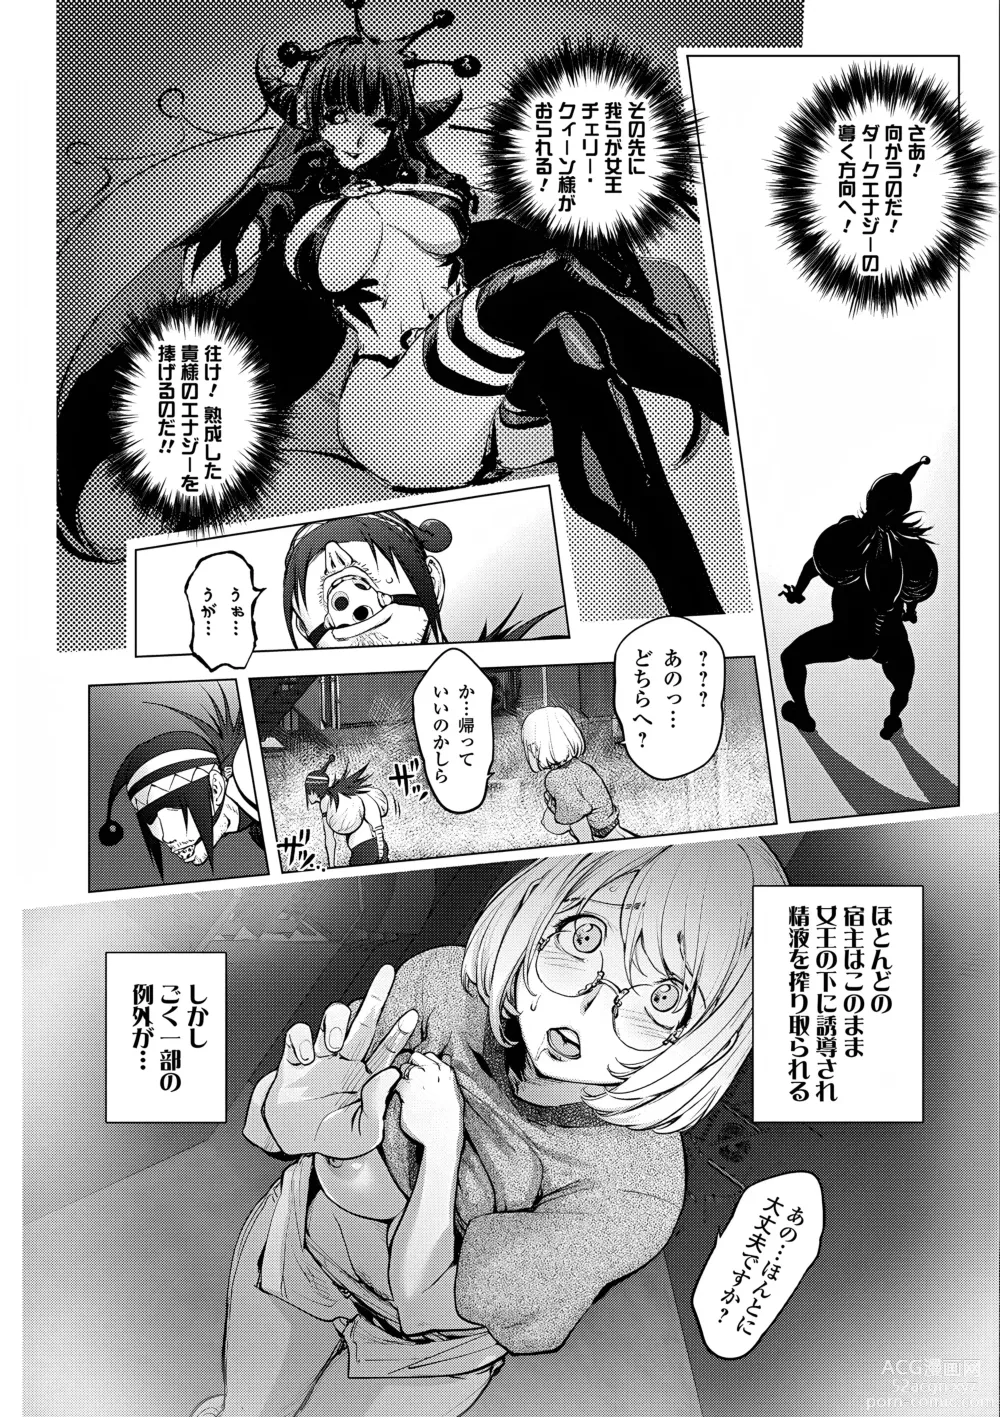 Page 10 of manga Kaya-Nee VS Cherry Boy